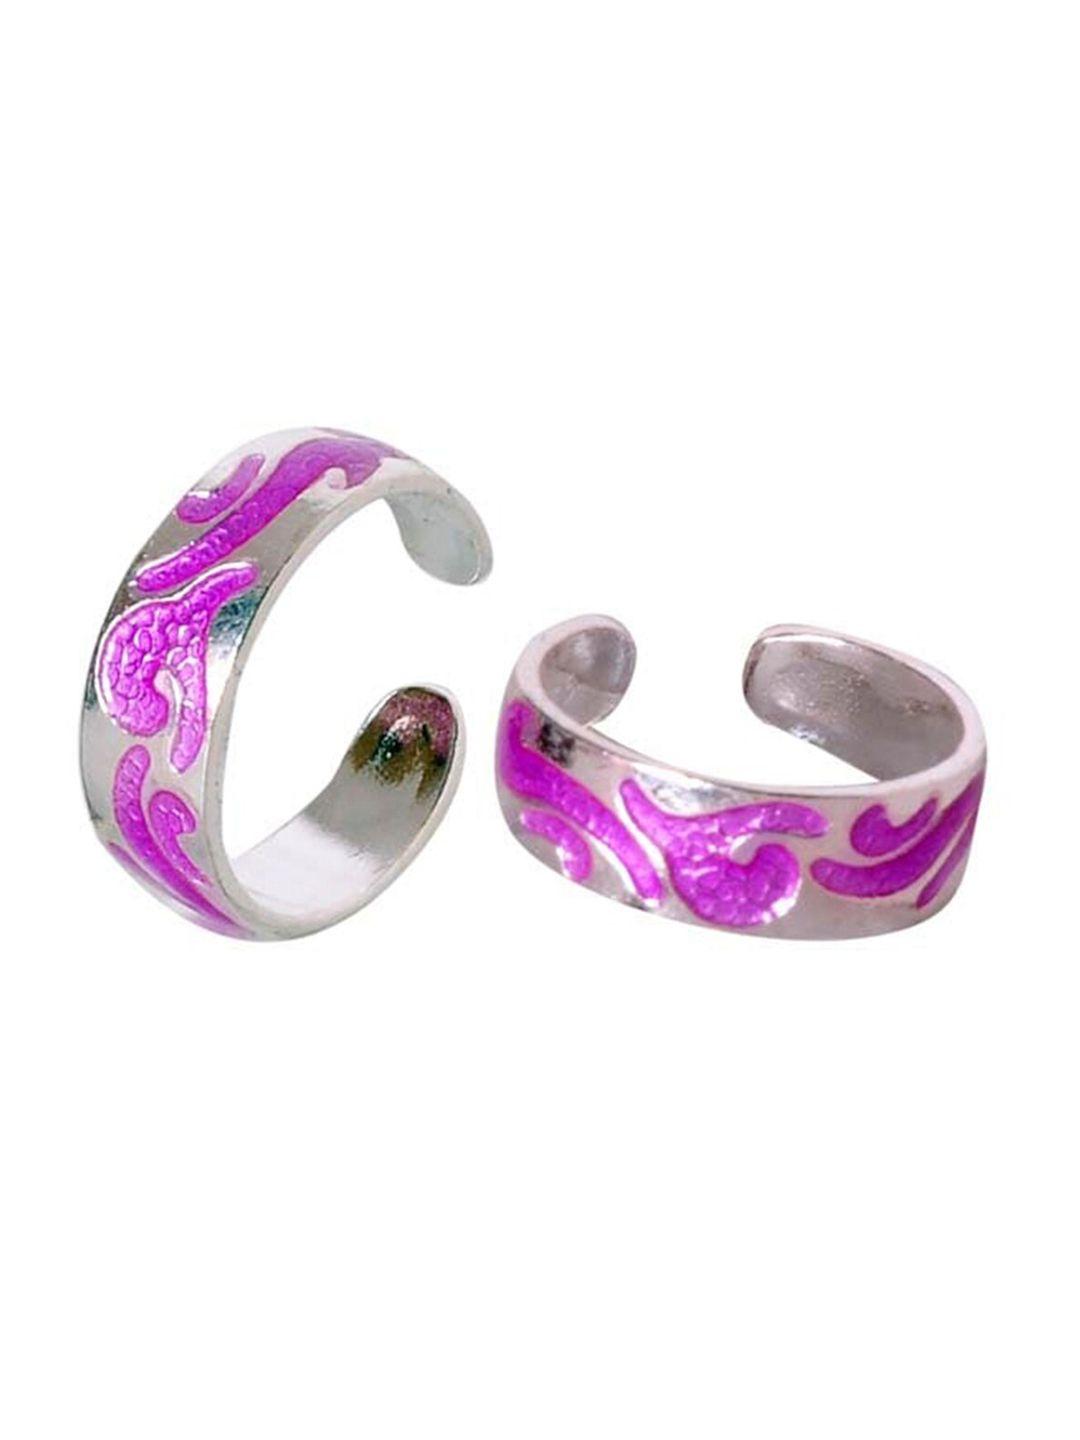 abhooshan-92.5-sterling-silver-enamel-adjustable-toe-rings